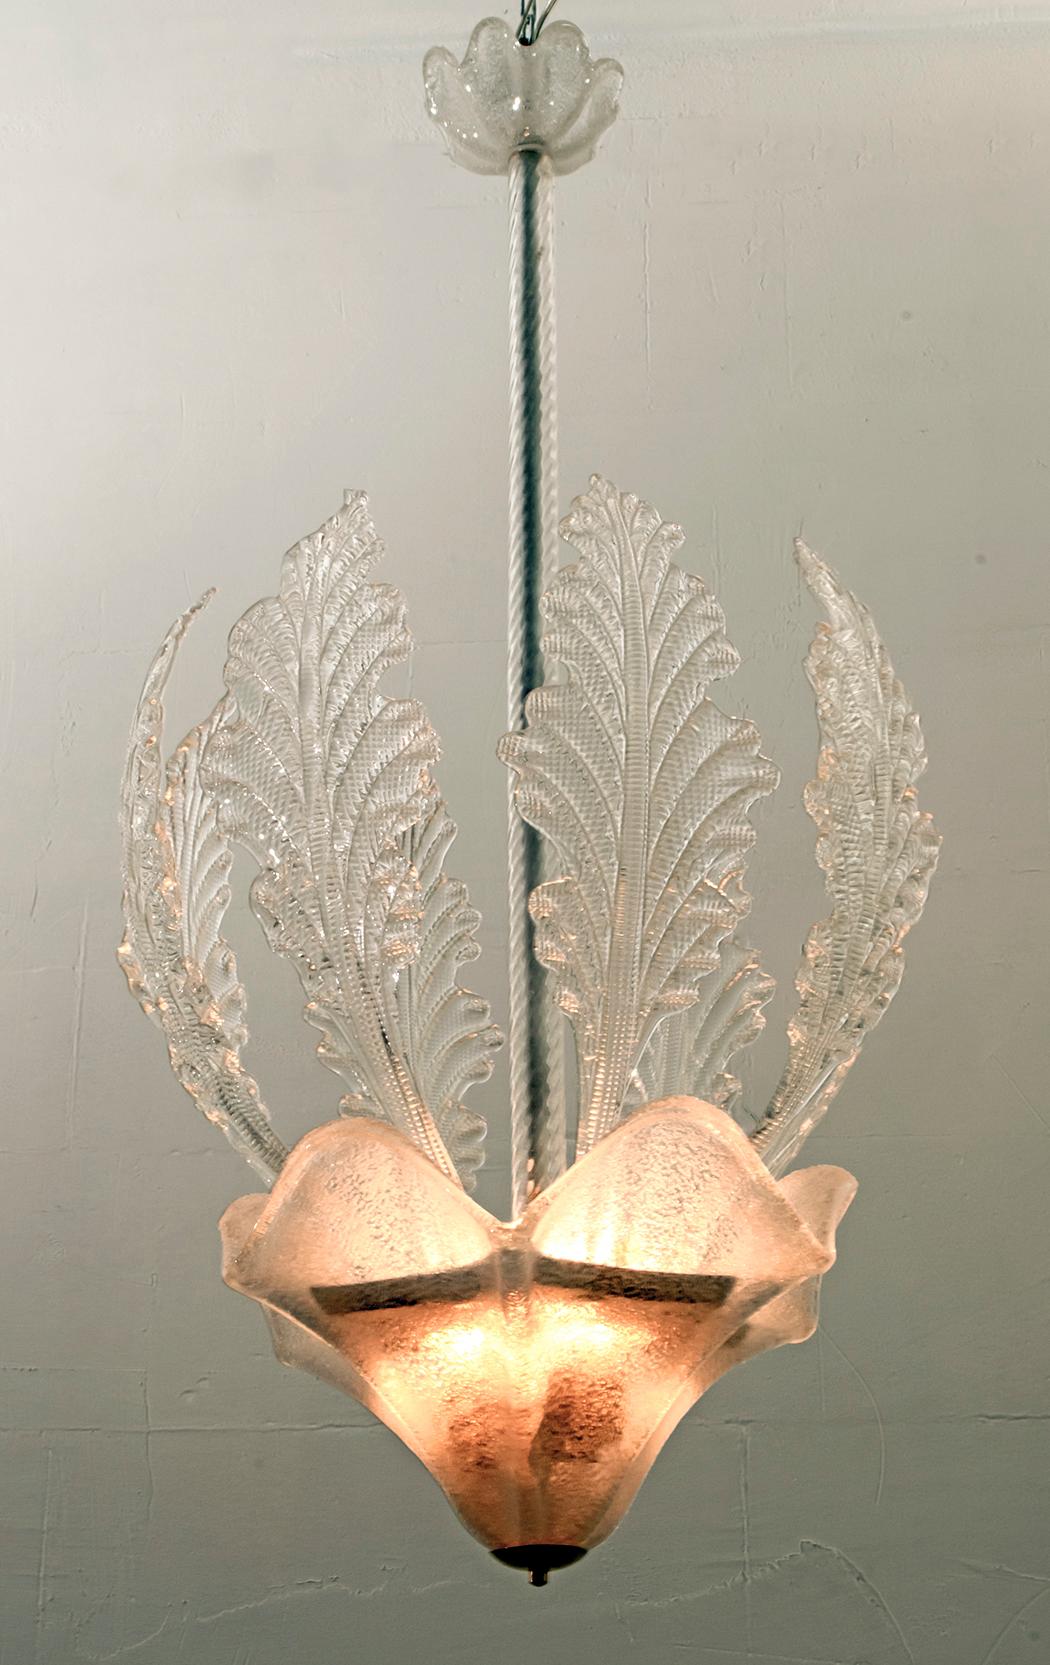 Dieser Kronleuchter wurde von Barovier&Toso in den 1940er Jahren entworfen und besteht aus körnigem Murano-Glas, das aus acht langen Blättern und einer großen Schale besteht.

Die Glaskunst von Barovier besteht seit Mitte des 13. Jahrhunderts und